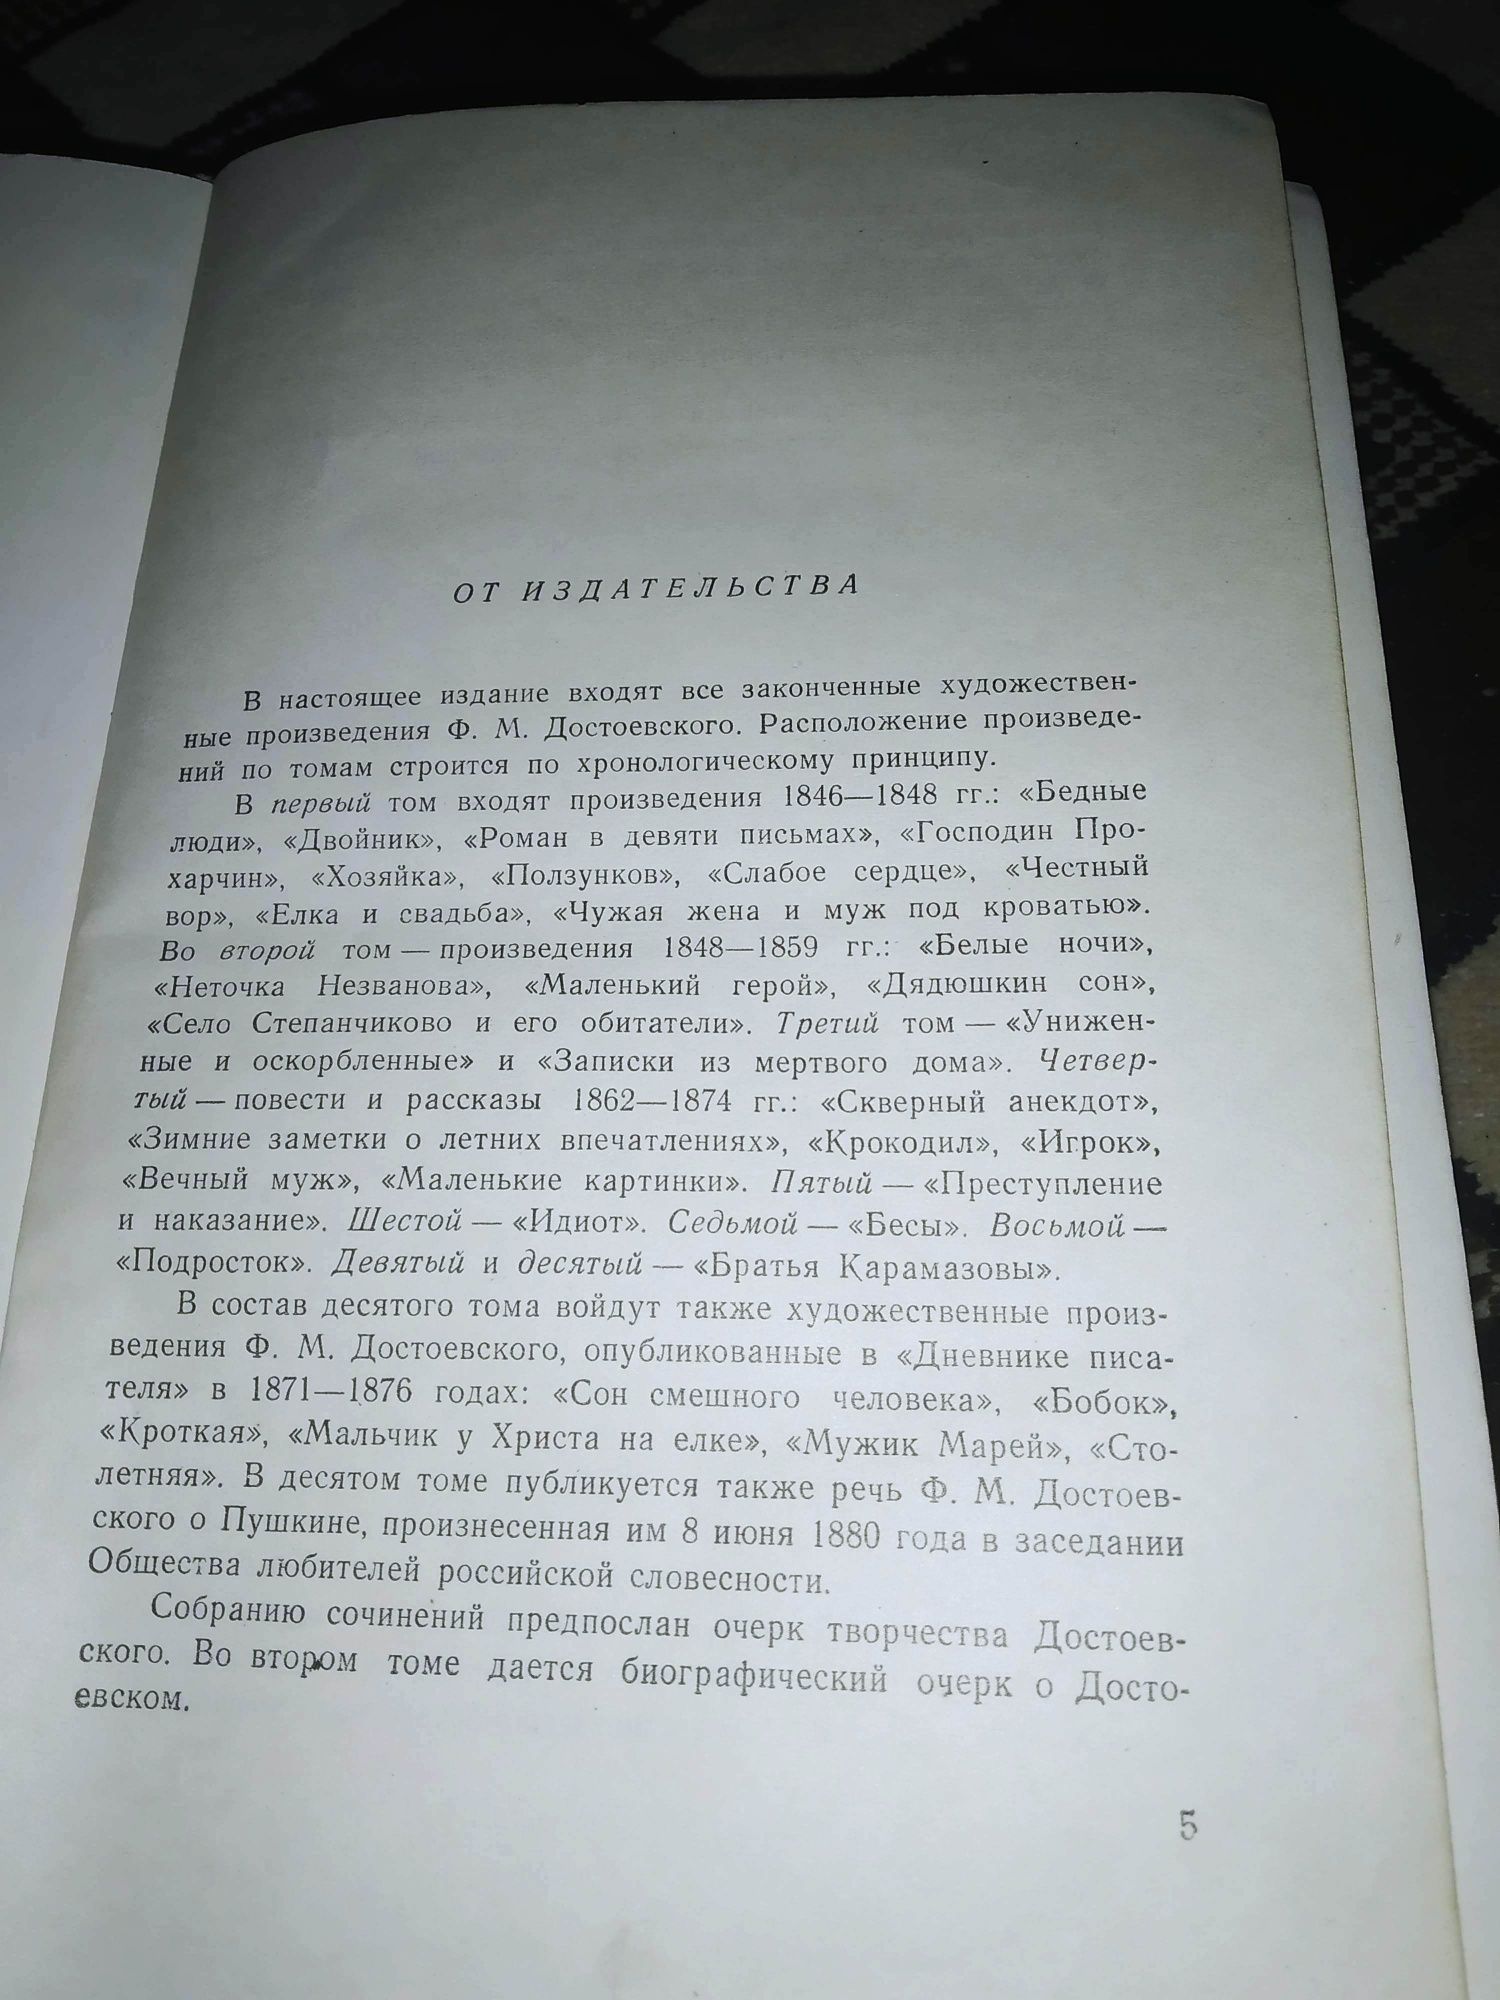 Ф. М. Достоевский Собрание сочинений в 10 томах, 1956 г, все законченн